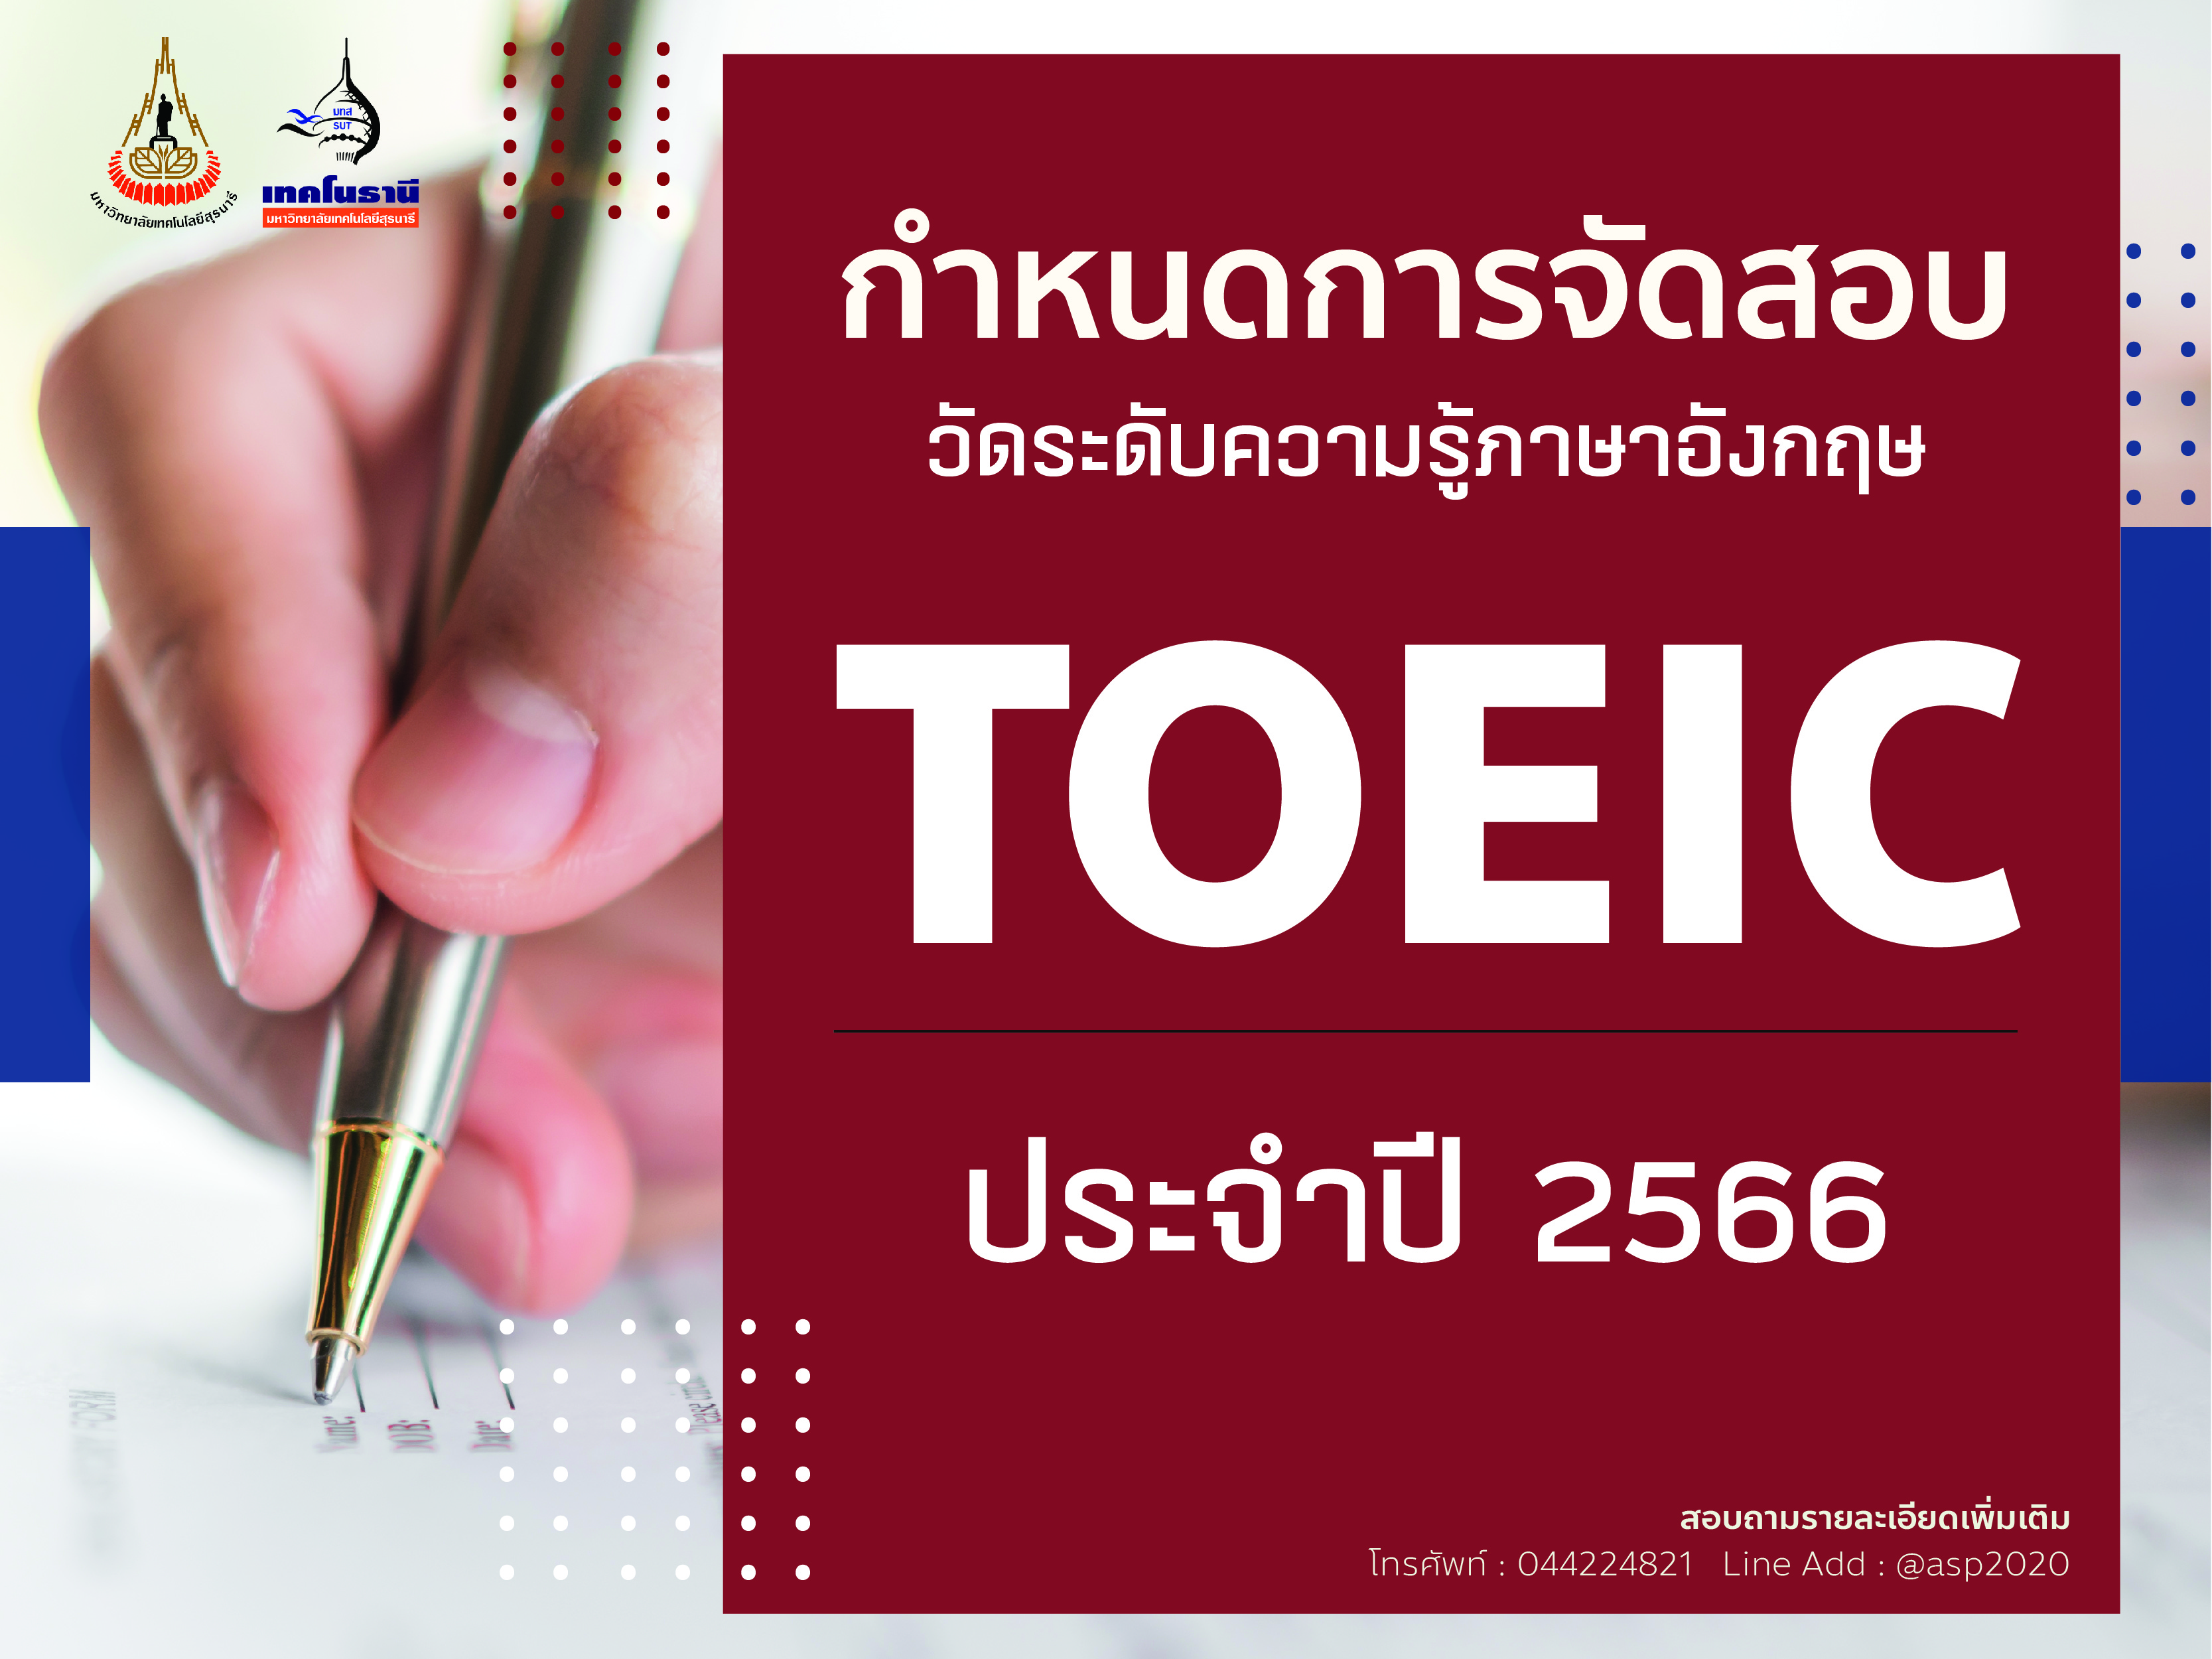 ตารางการจัดสอบวัดระดับความรู้ภาษาอังกฤษ TOEIC ปี 2566-2567